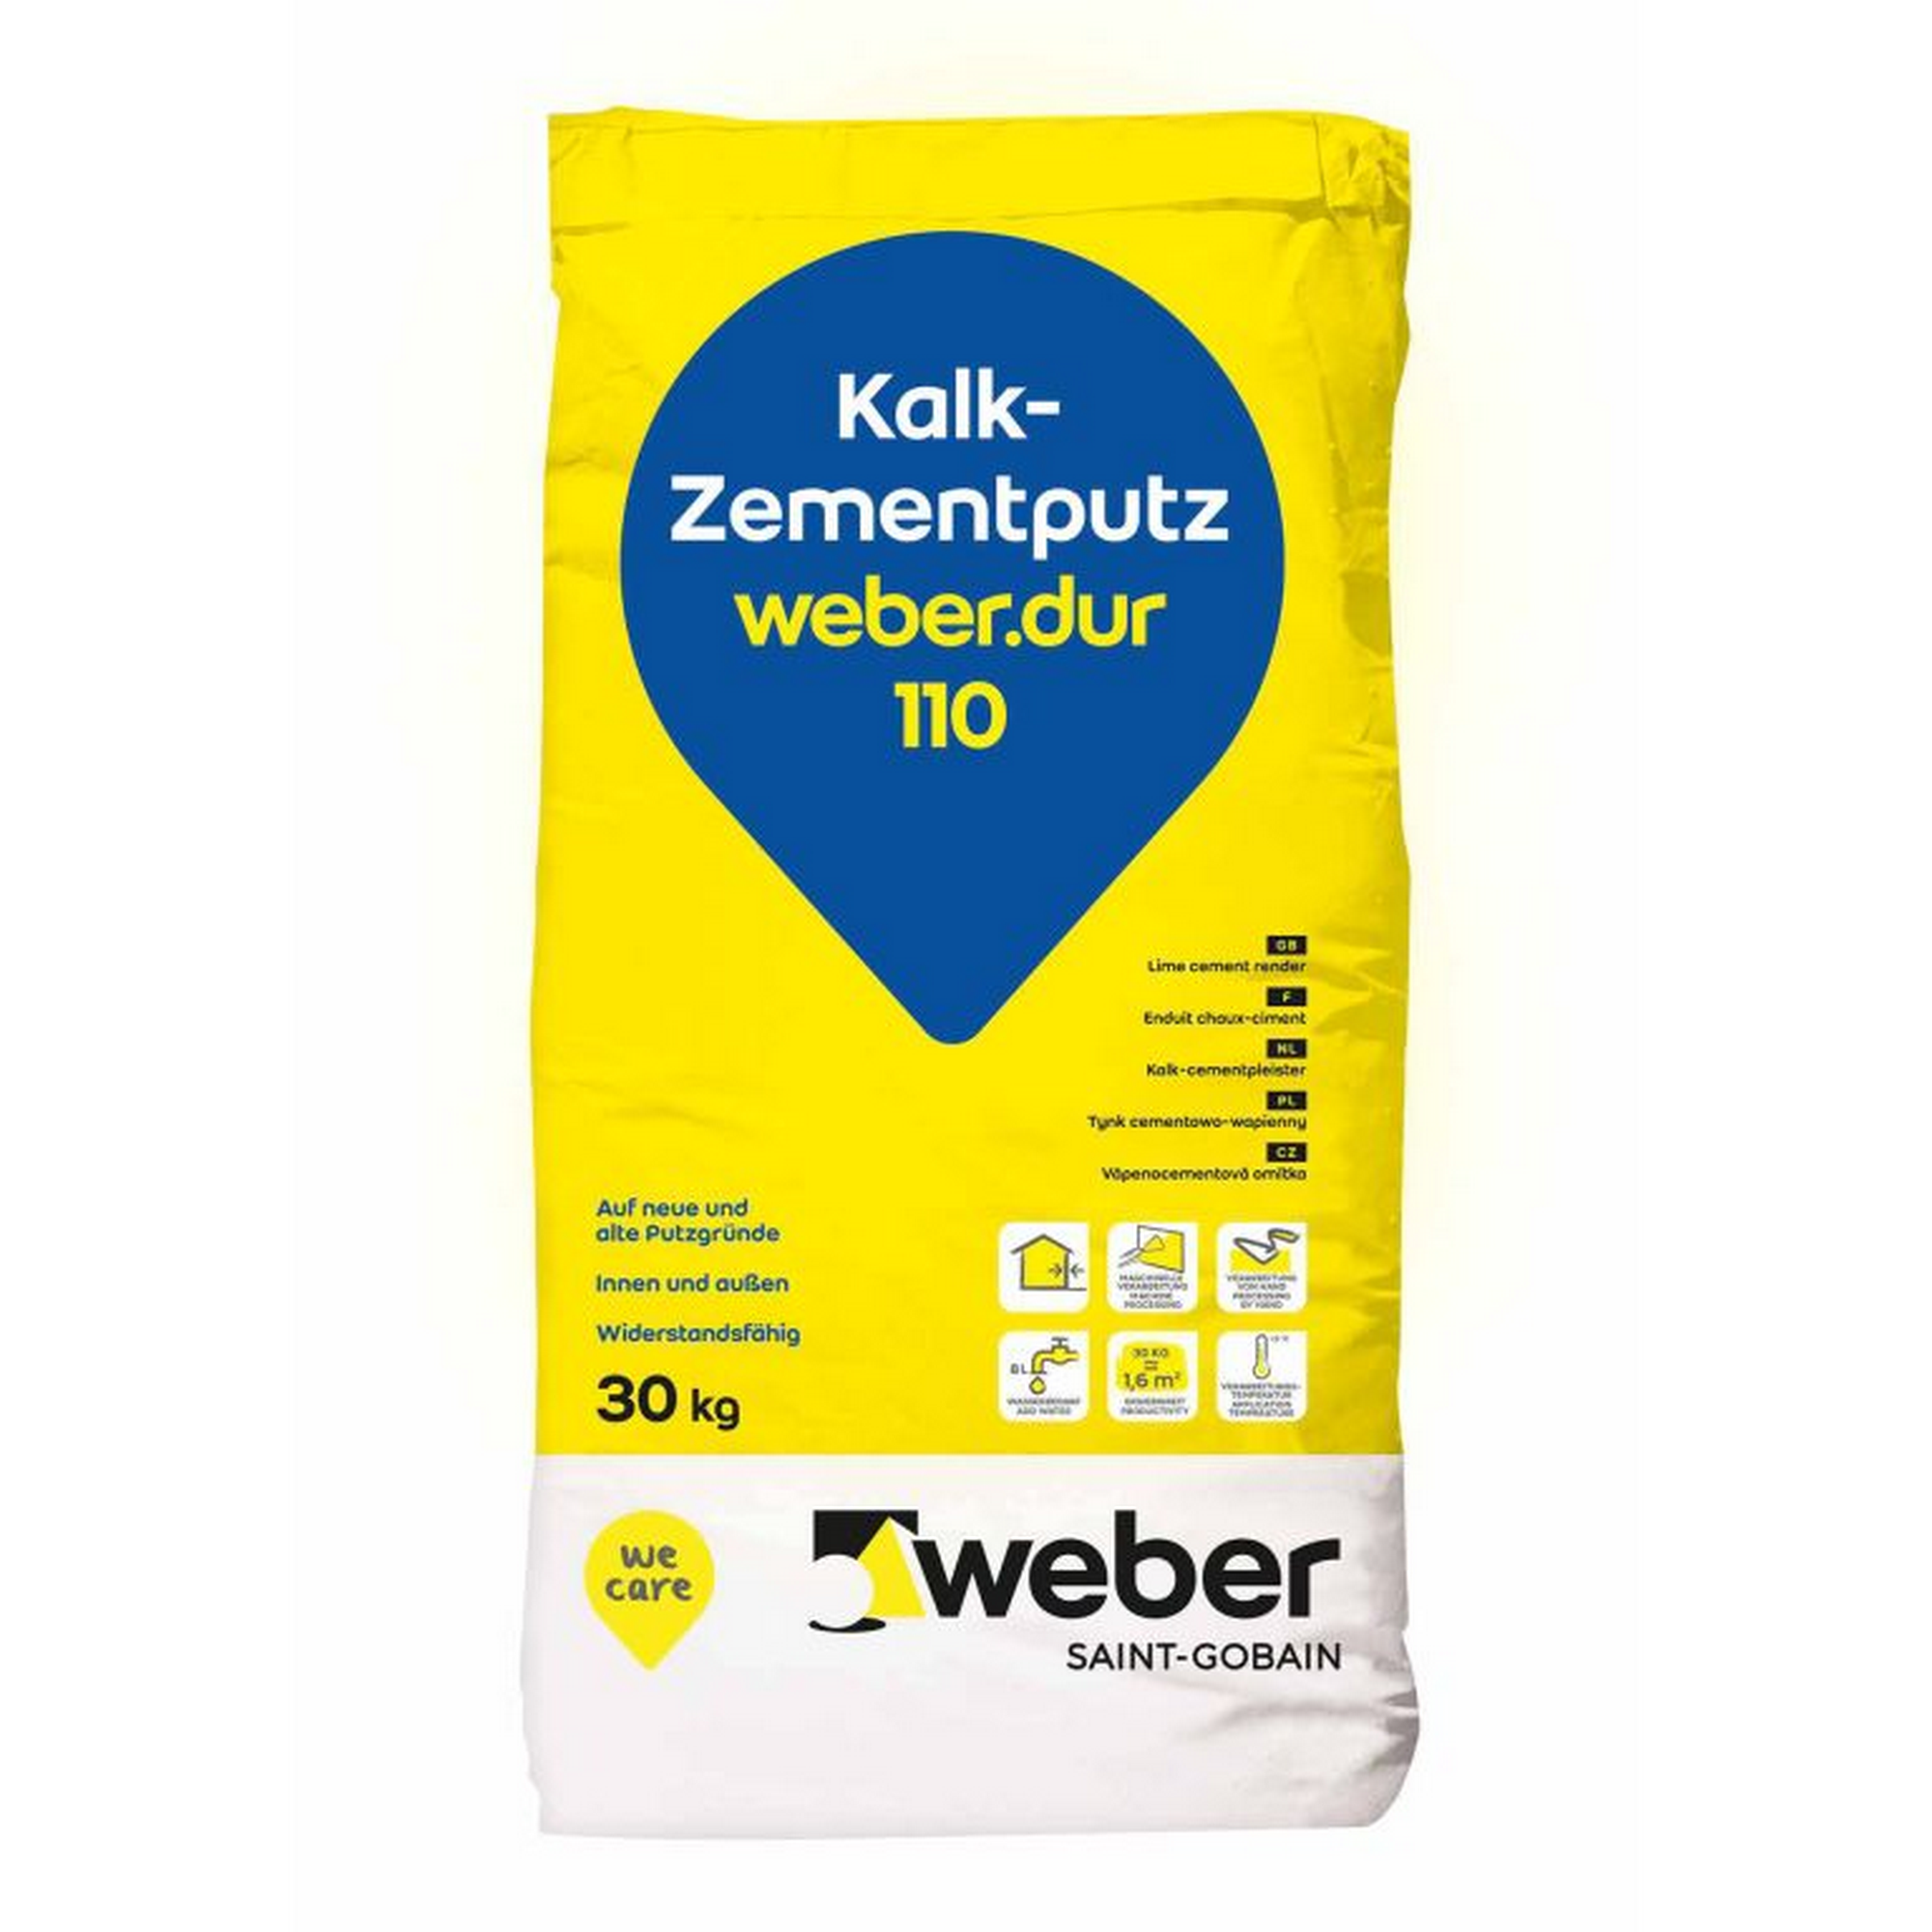 Kalk-Zementputz 'weber.dur 110' 30 kg + product picture